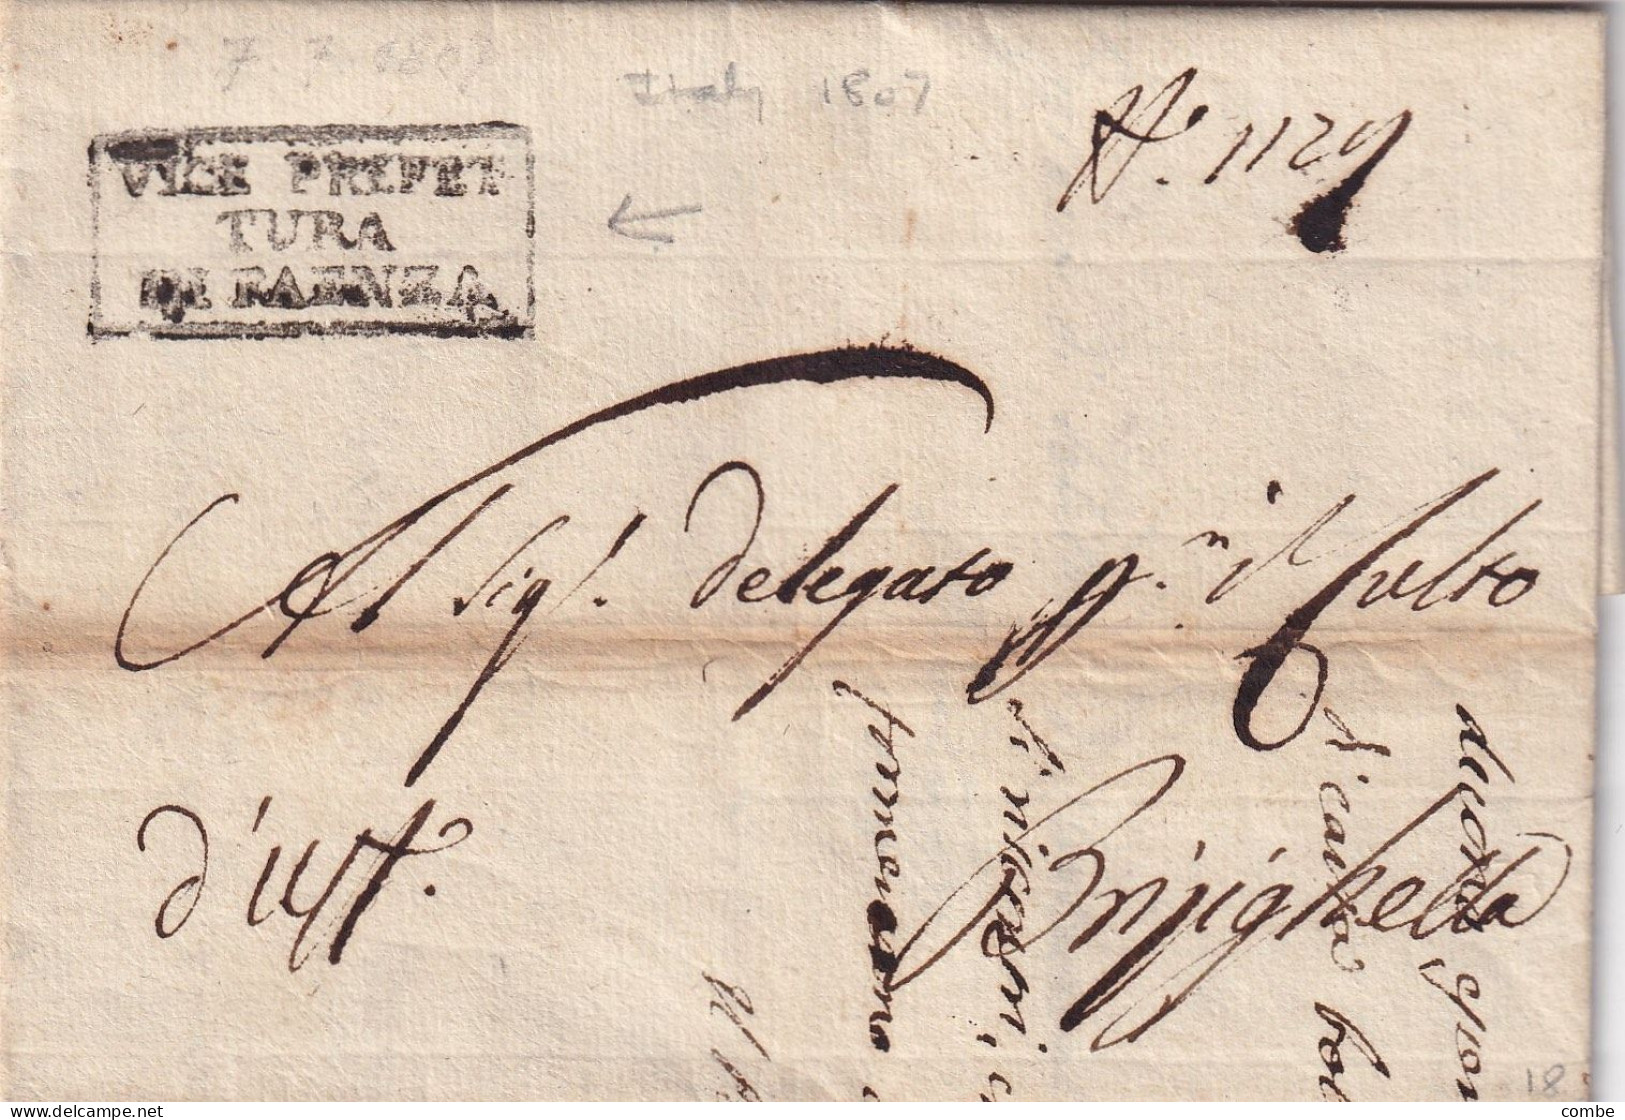 LETTERA ITALIA. 7 LUGLIO 1807. VICE PREFET/TURA/DE FAENZA. CARLO MANTEGAZZA. DEPARTIMENTO DEL RUBICONE. REGNO - 1. ...-1850 Prefilatelia